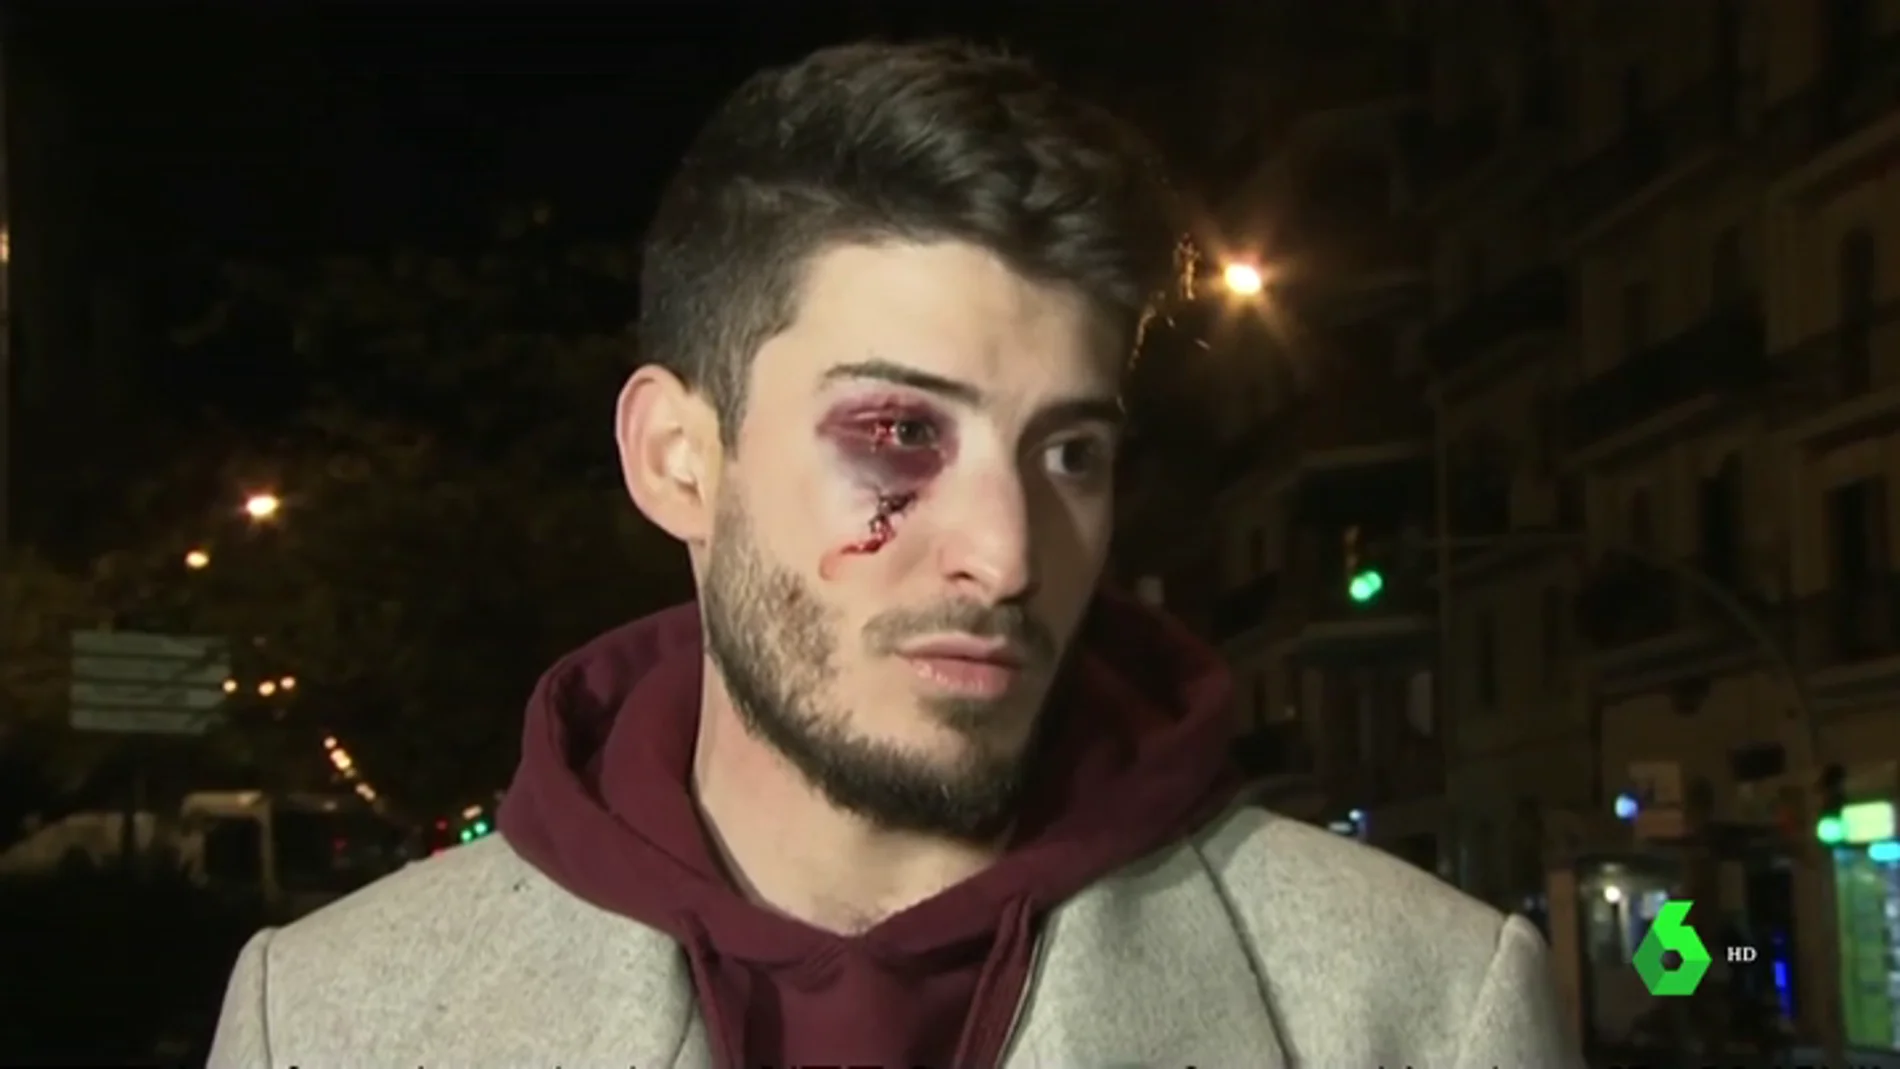 Salvaje agresión homófoba en el metro de Barcelona: "